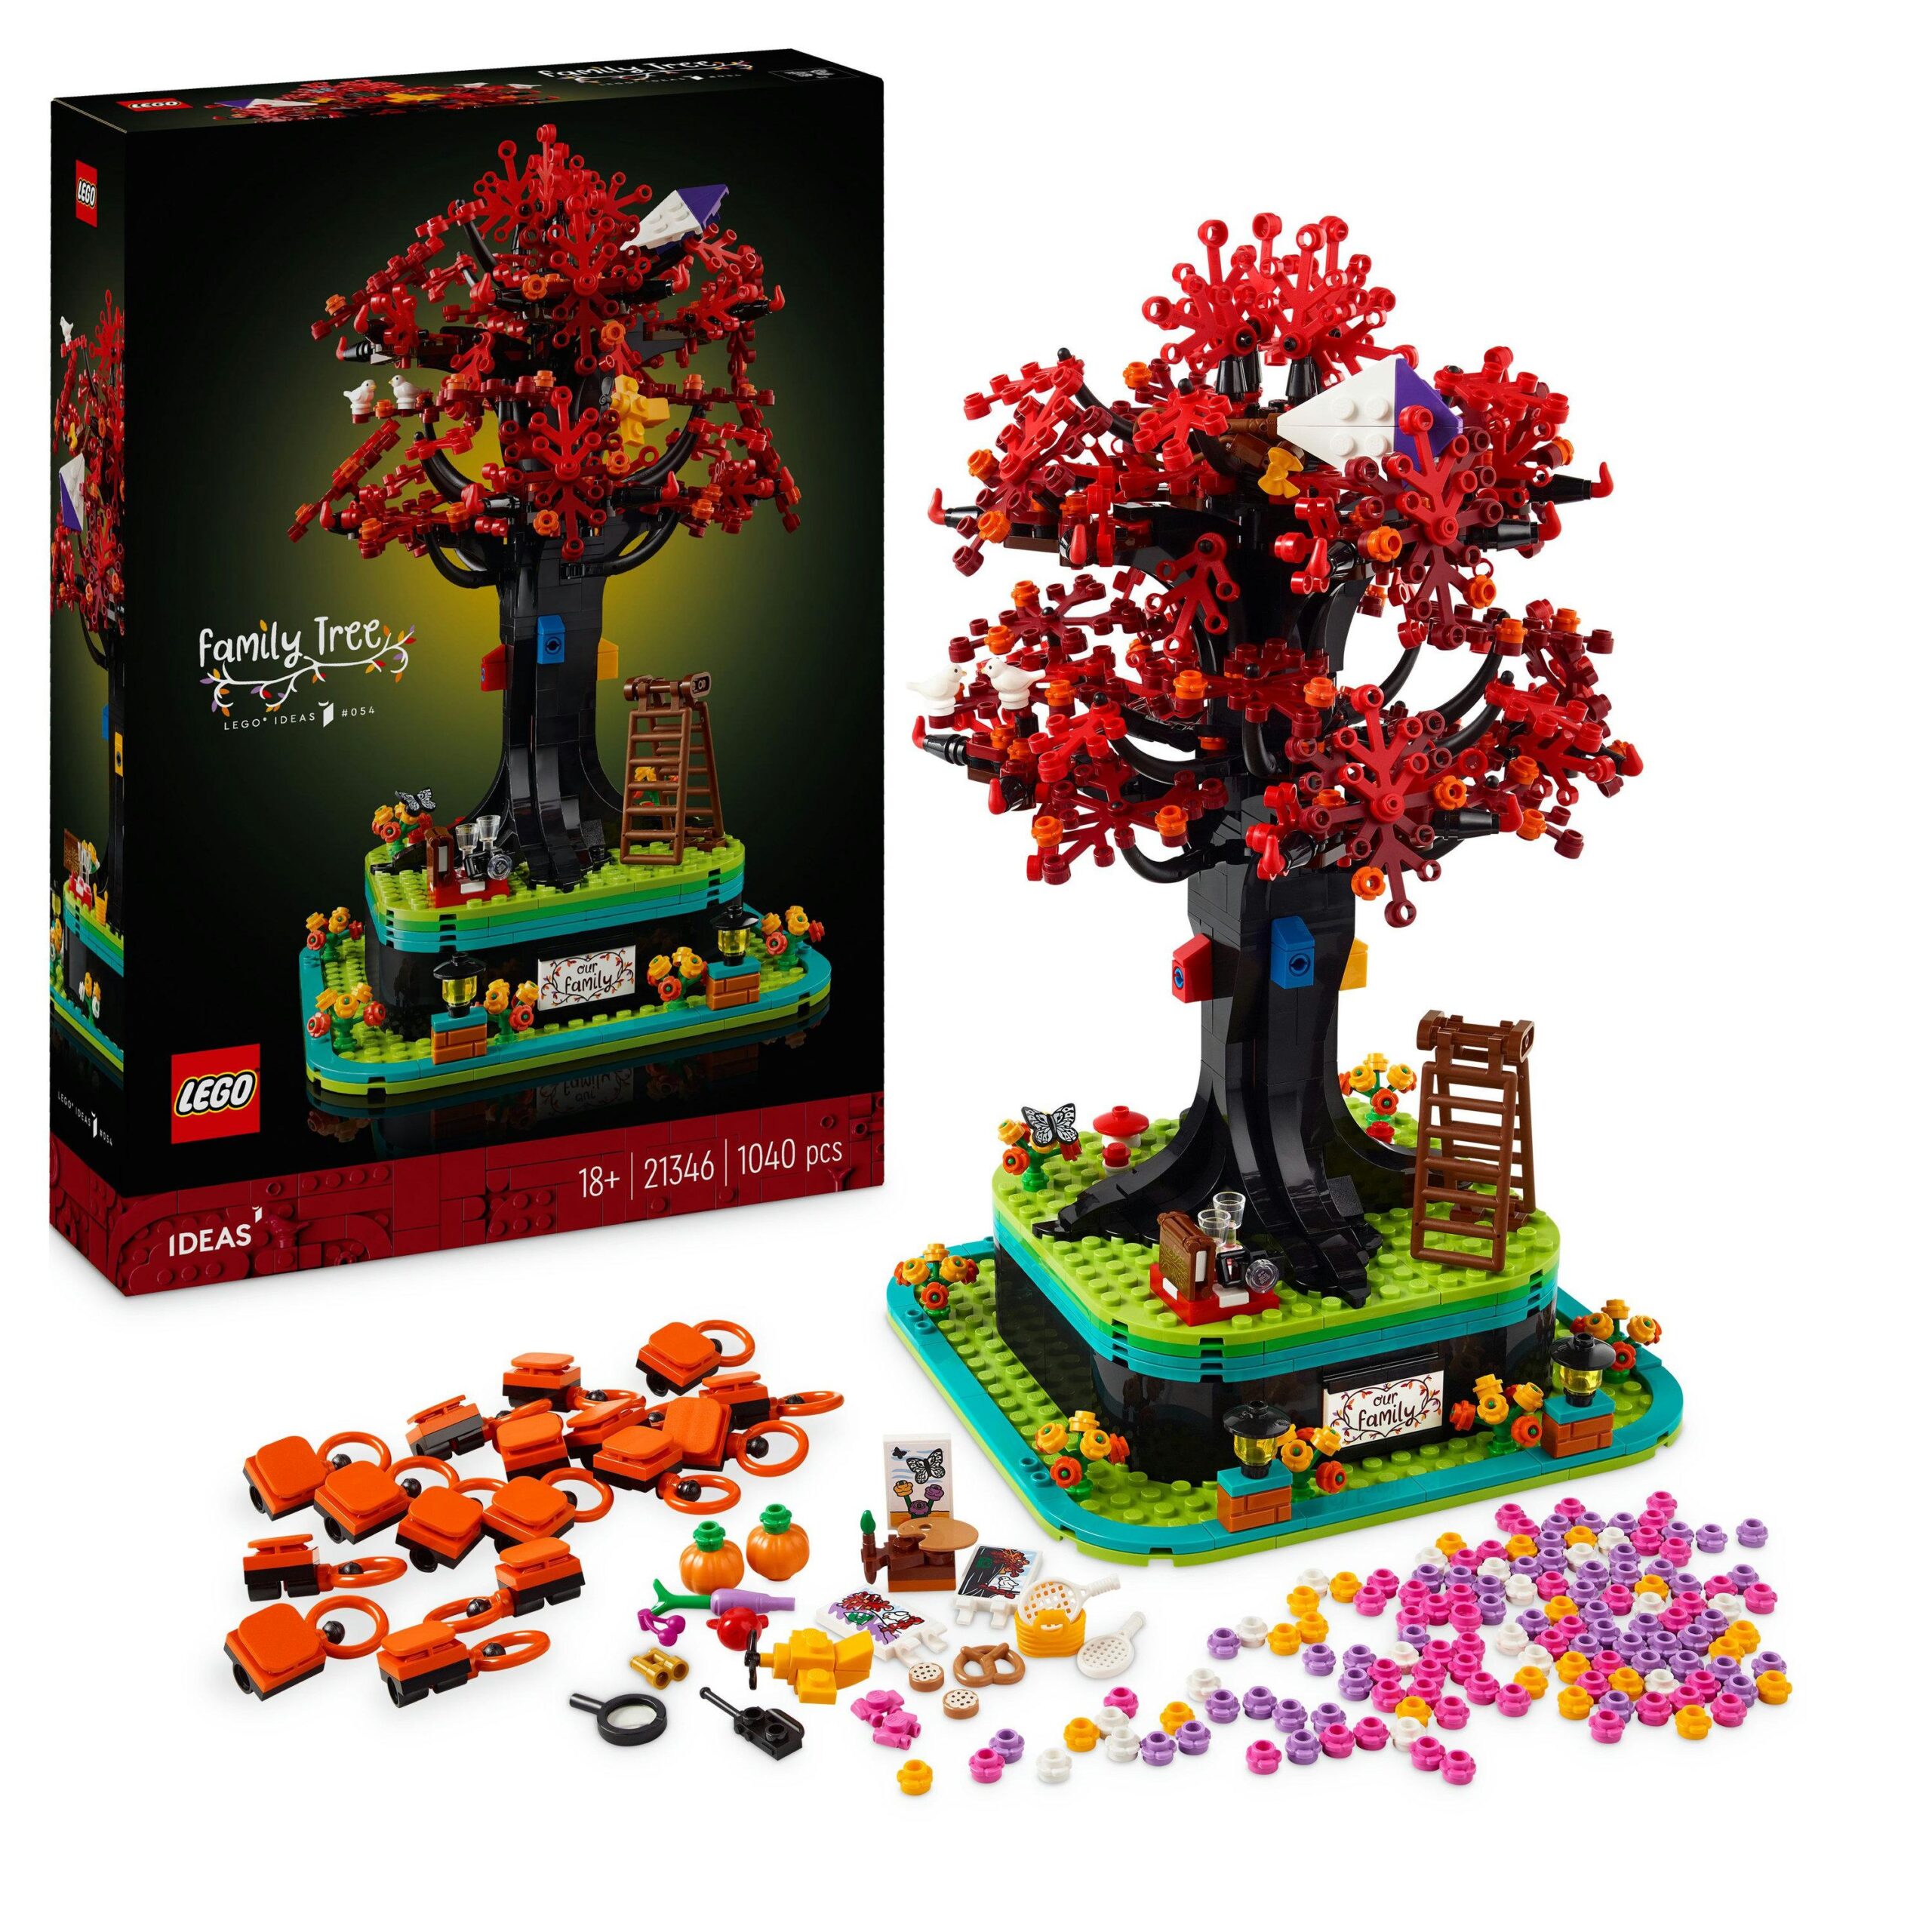 Lego ideas 21346 albero genealogico, idea regalo, hobby creativo con le costruzioni per adulti, decorazione per casa e ufficio - LEGO IDEAS